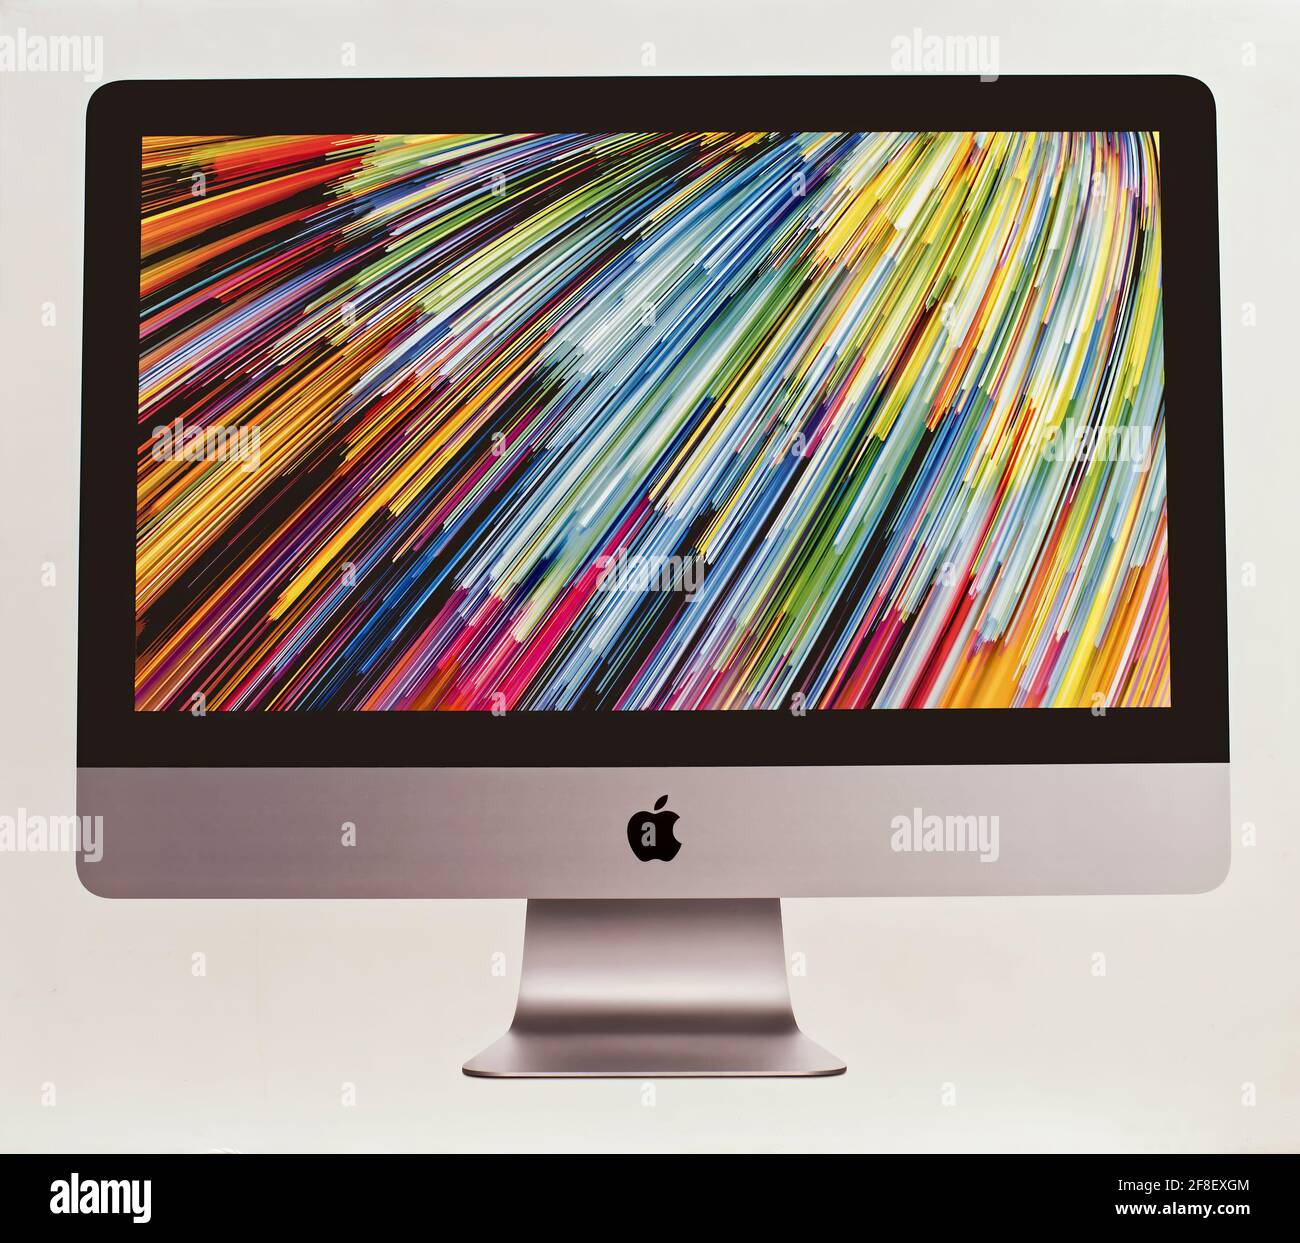 Nuovo personal computer iMac da 21,5 pollici realizzato da Apple Computers, isolato su sfondo bianco. Vista frontale Foto Stock